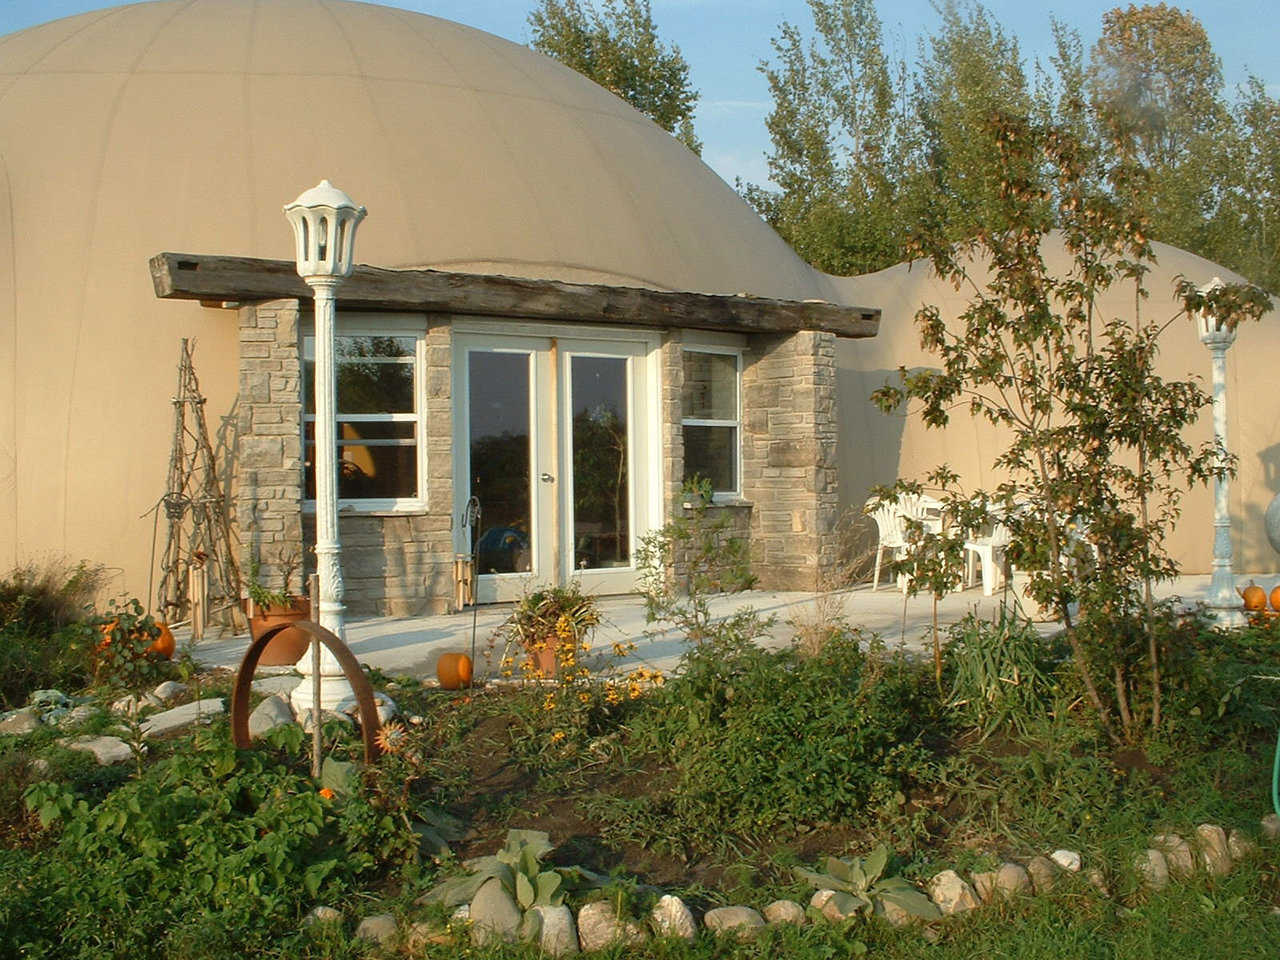 Gemini Midsize Dome Home in Lake Huron Canada